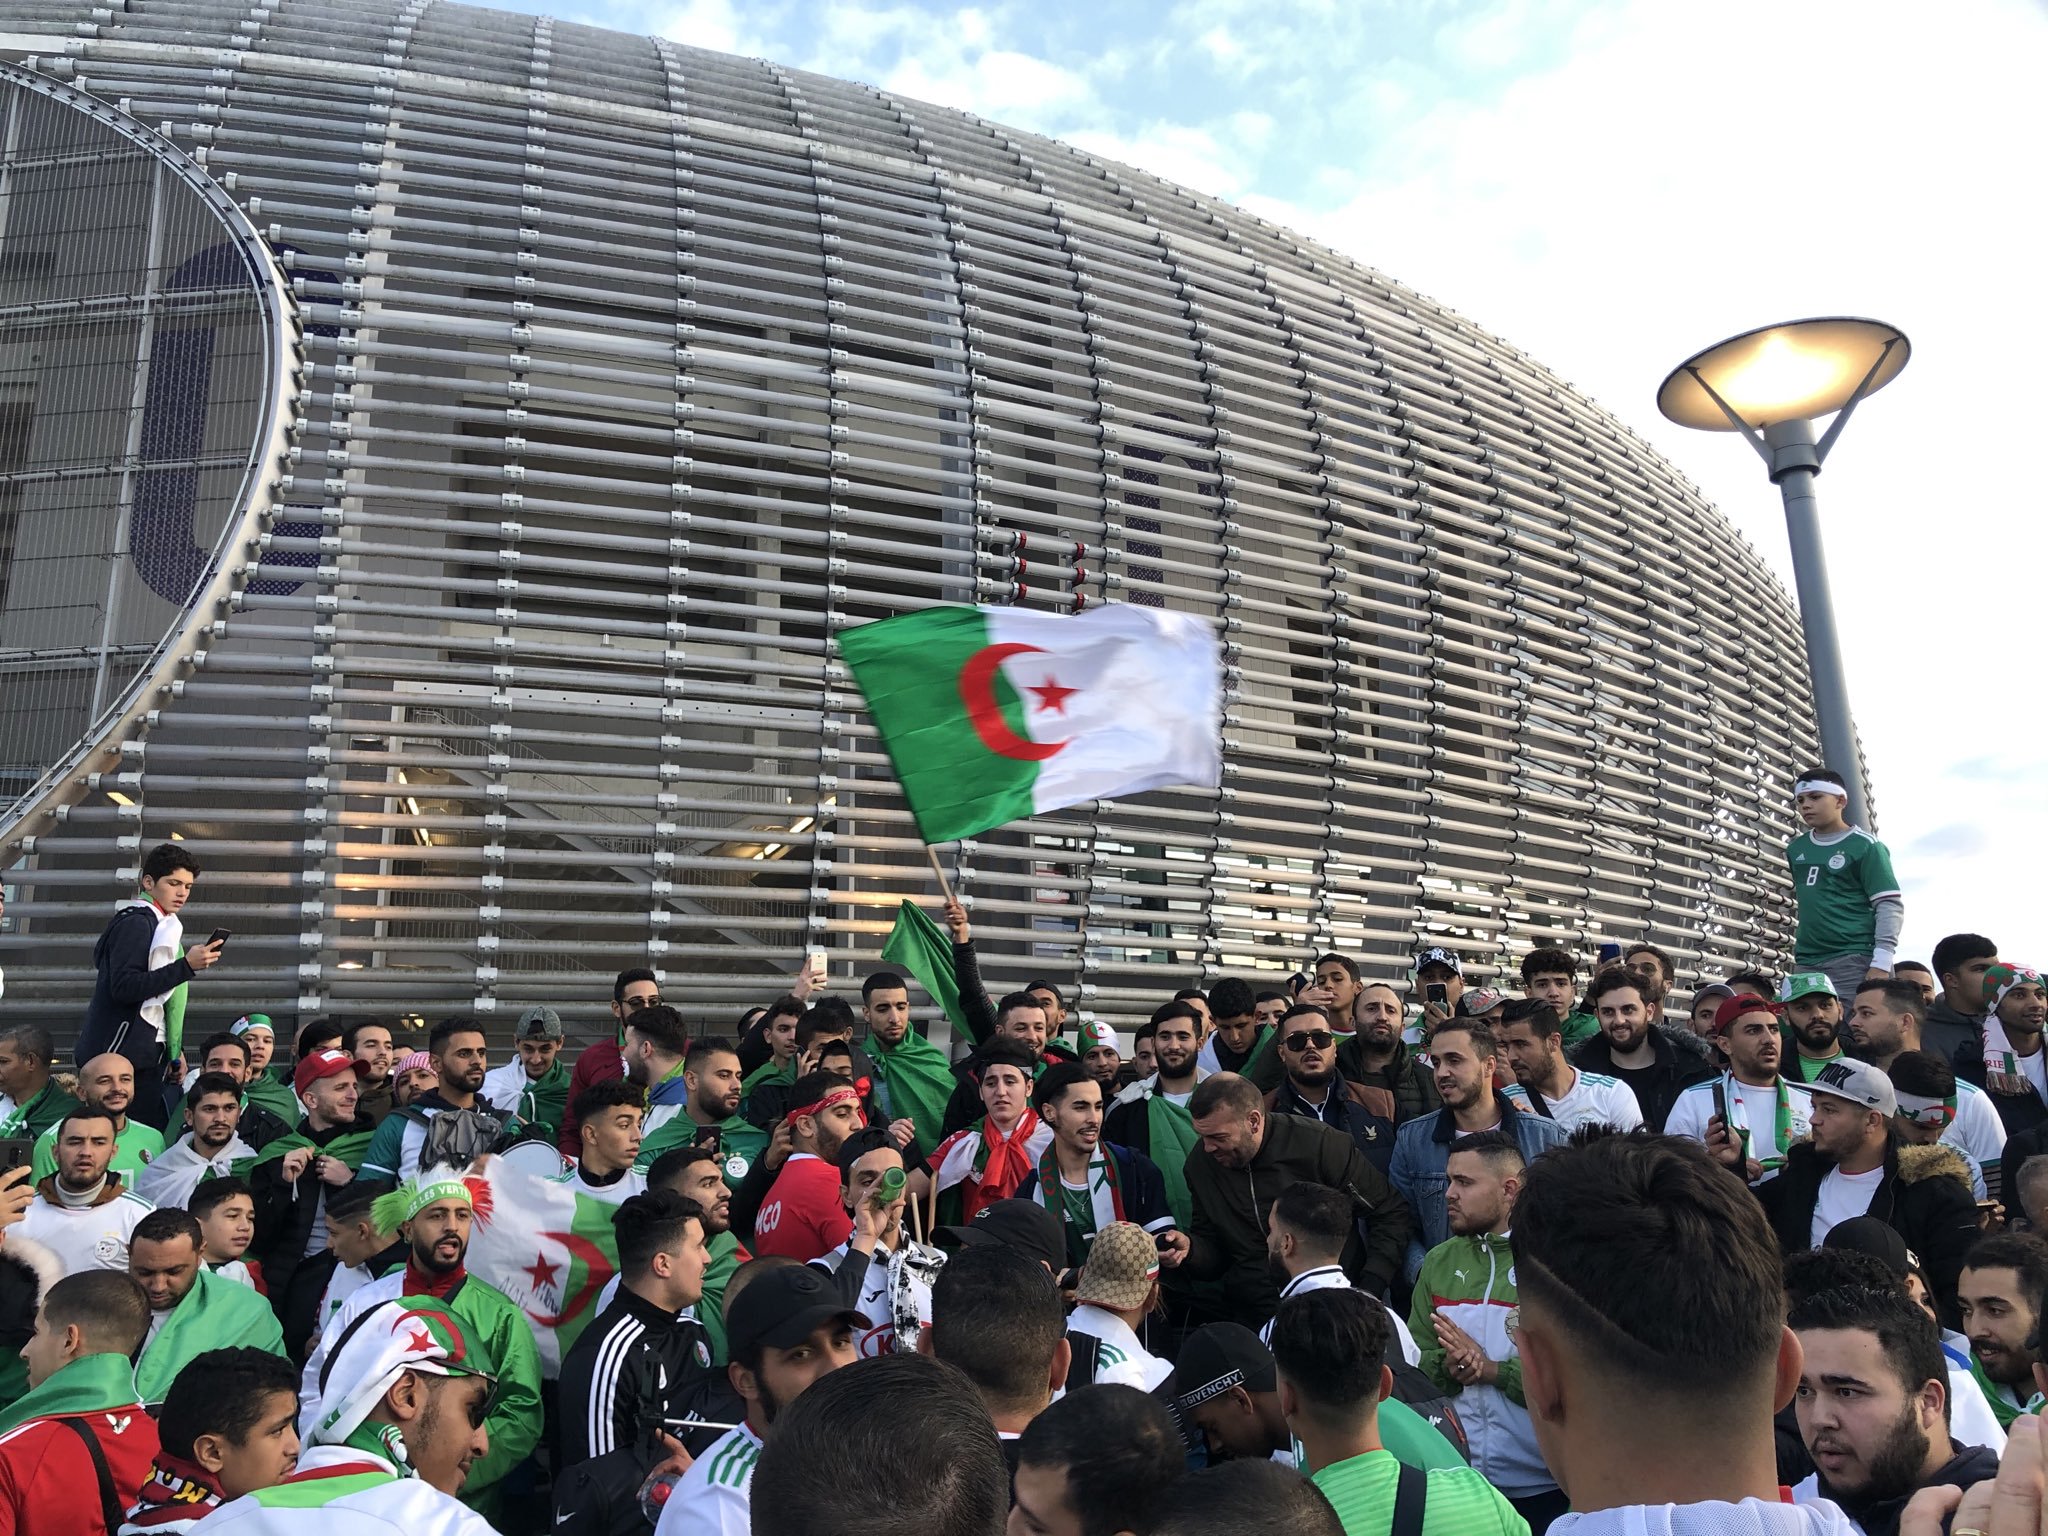 بالصور .. الجزائر - كولومبيا : الجماهير الجزائرية بقوة في ملعب بيار موروا 1